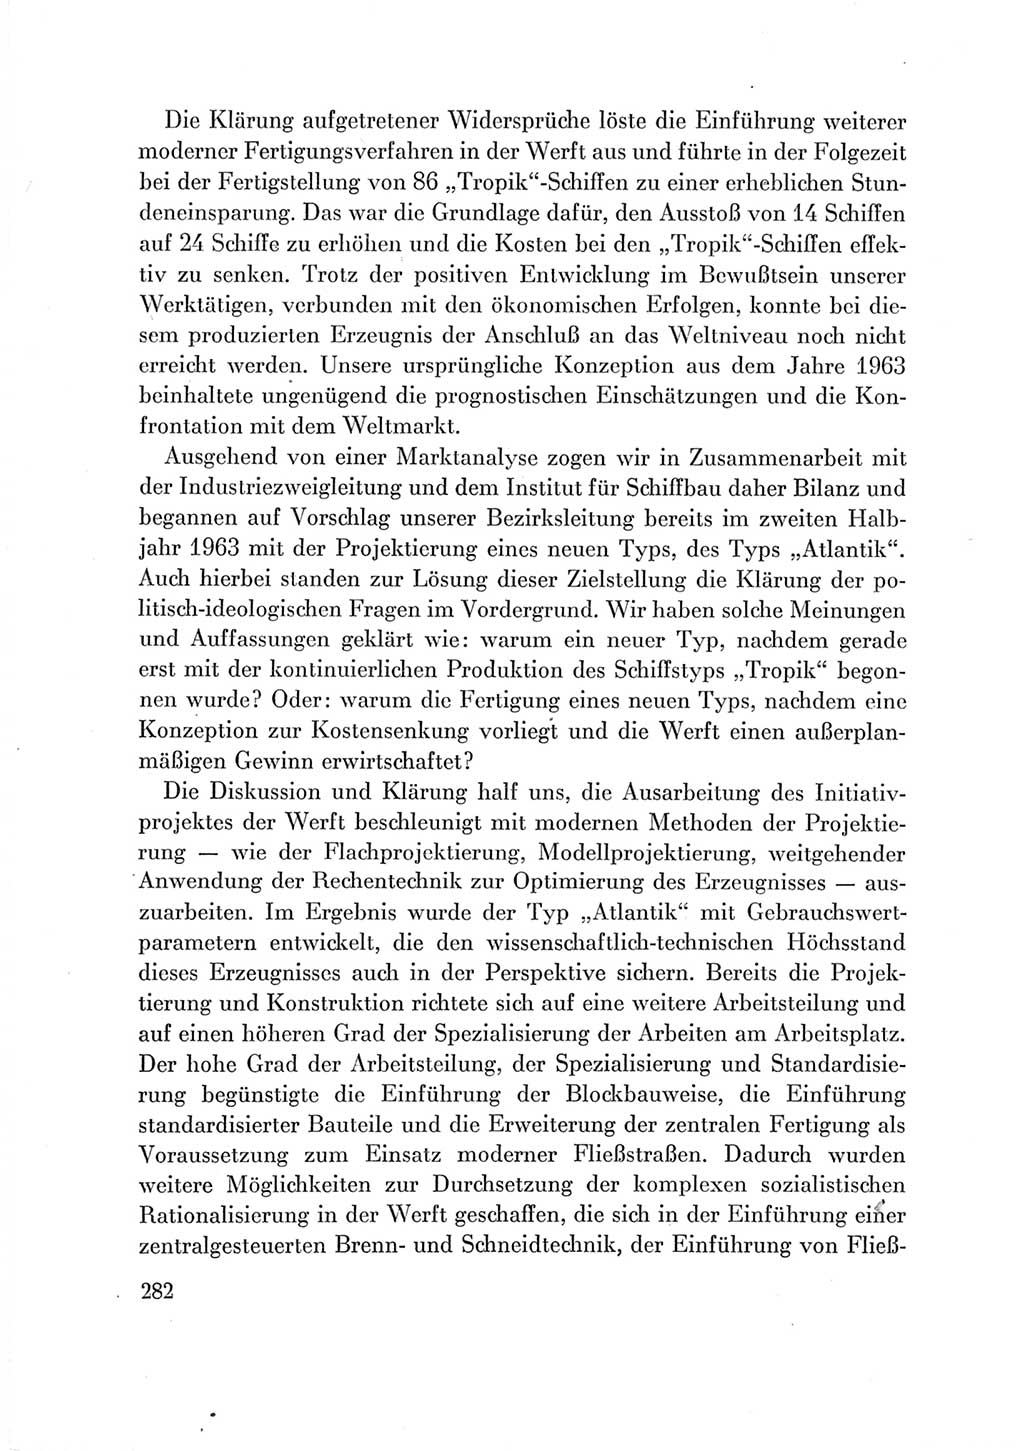 Protokoll der Verhandlungen des Ⅶ. Parteitages der Sozialistischen Einheitspartei Deutschlands (SED) [Deutsche Demokratische Republik (DDR)] 1967, Band Ⅲ, Seite 282 (Prot. Verh. Ⅶ. PT SED DDR 1967, Bd. Ⅲ, S. 282)